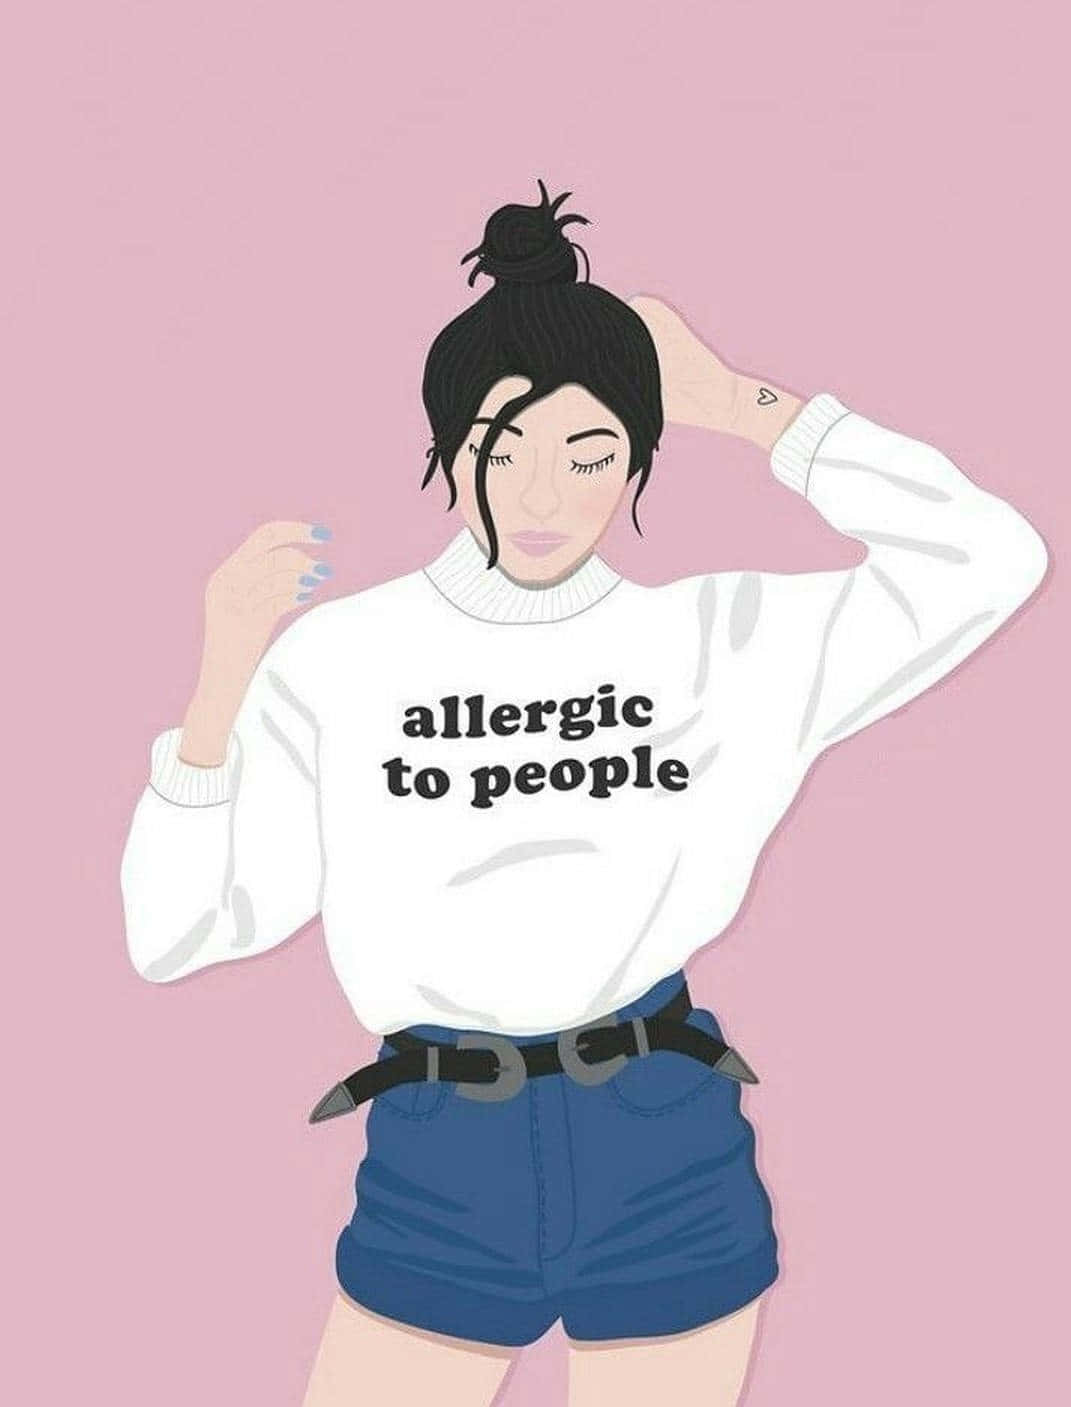 Allergiegegen Menschen